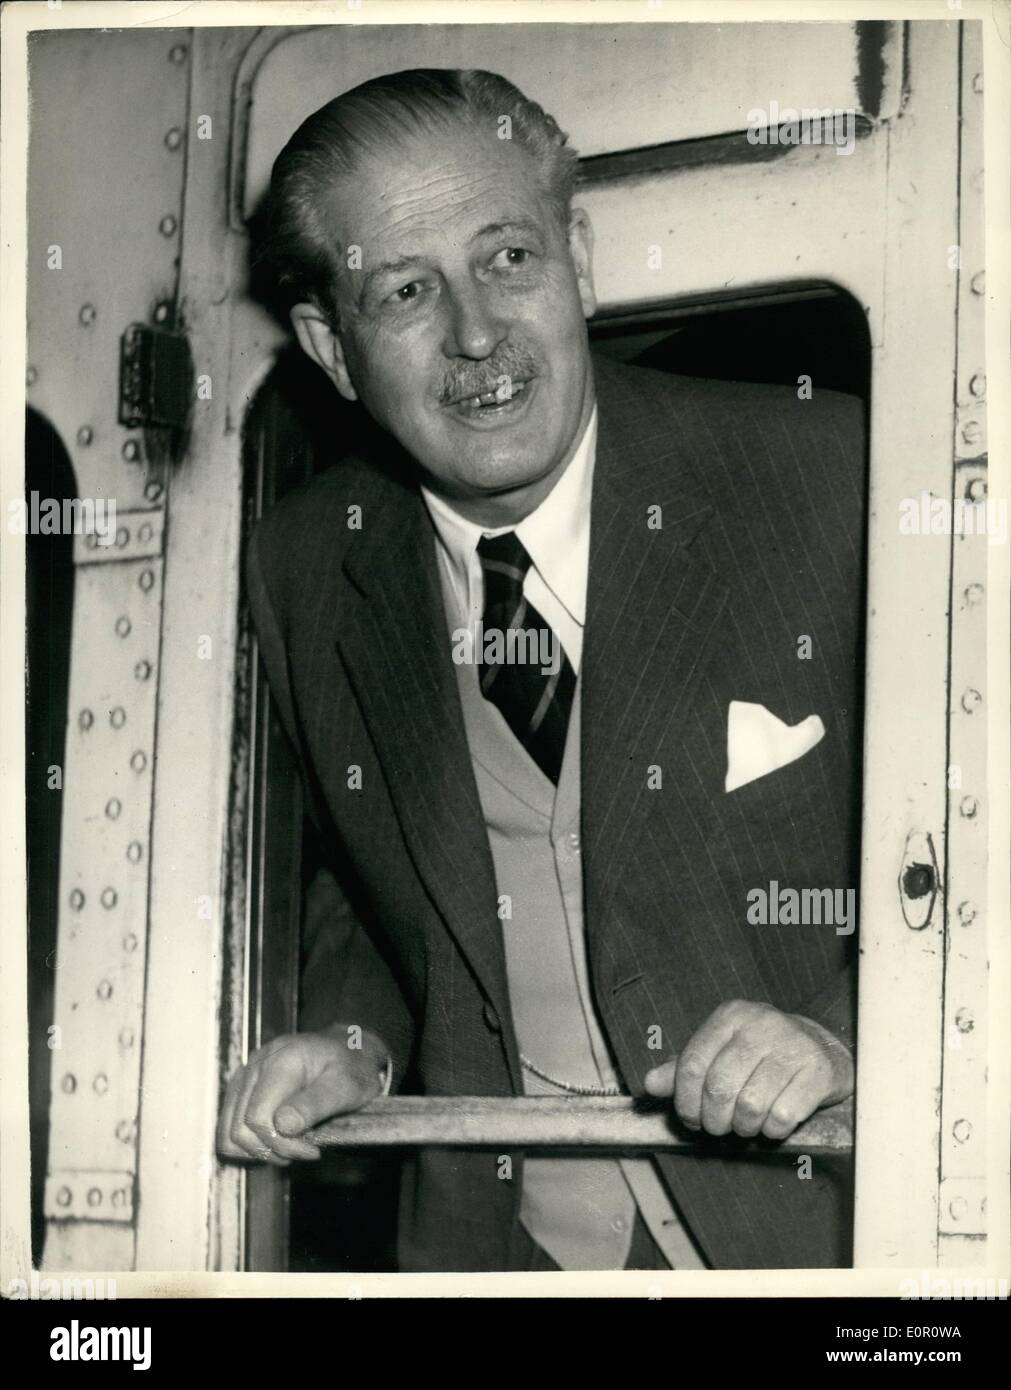 Juin 06, 1957 - Le Premier ministre se rend à Sir Anthony Eden. : M. Harold Macmillan le premier ministre s'est rendu en train à Salisbury Banque D'Images